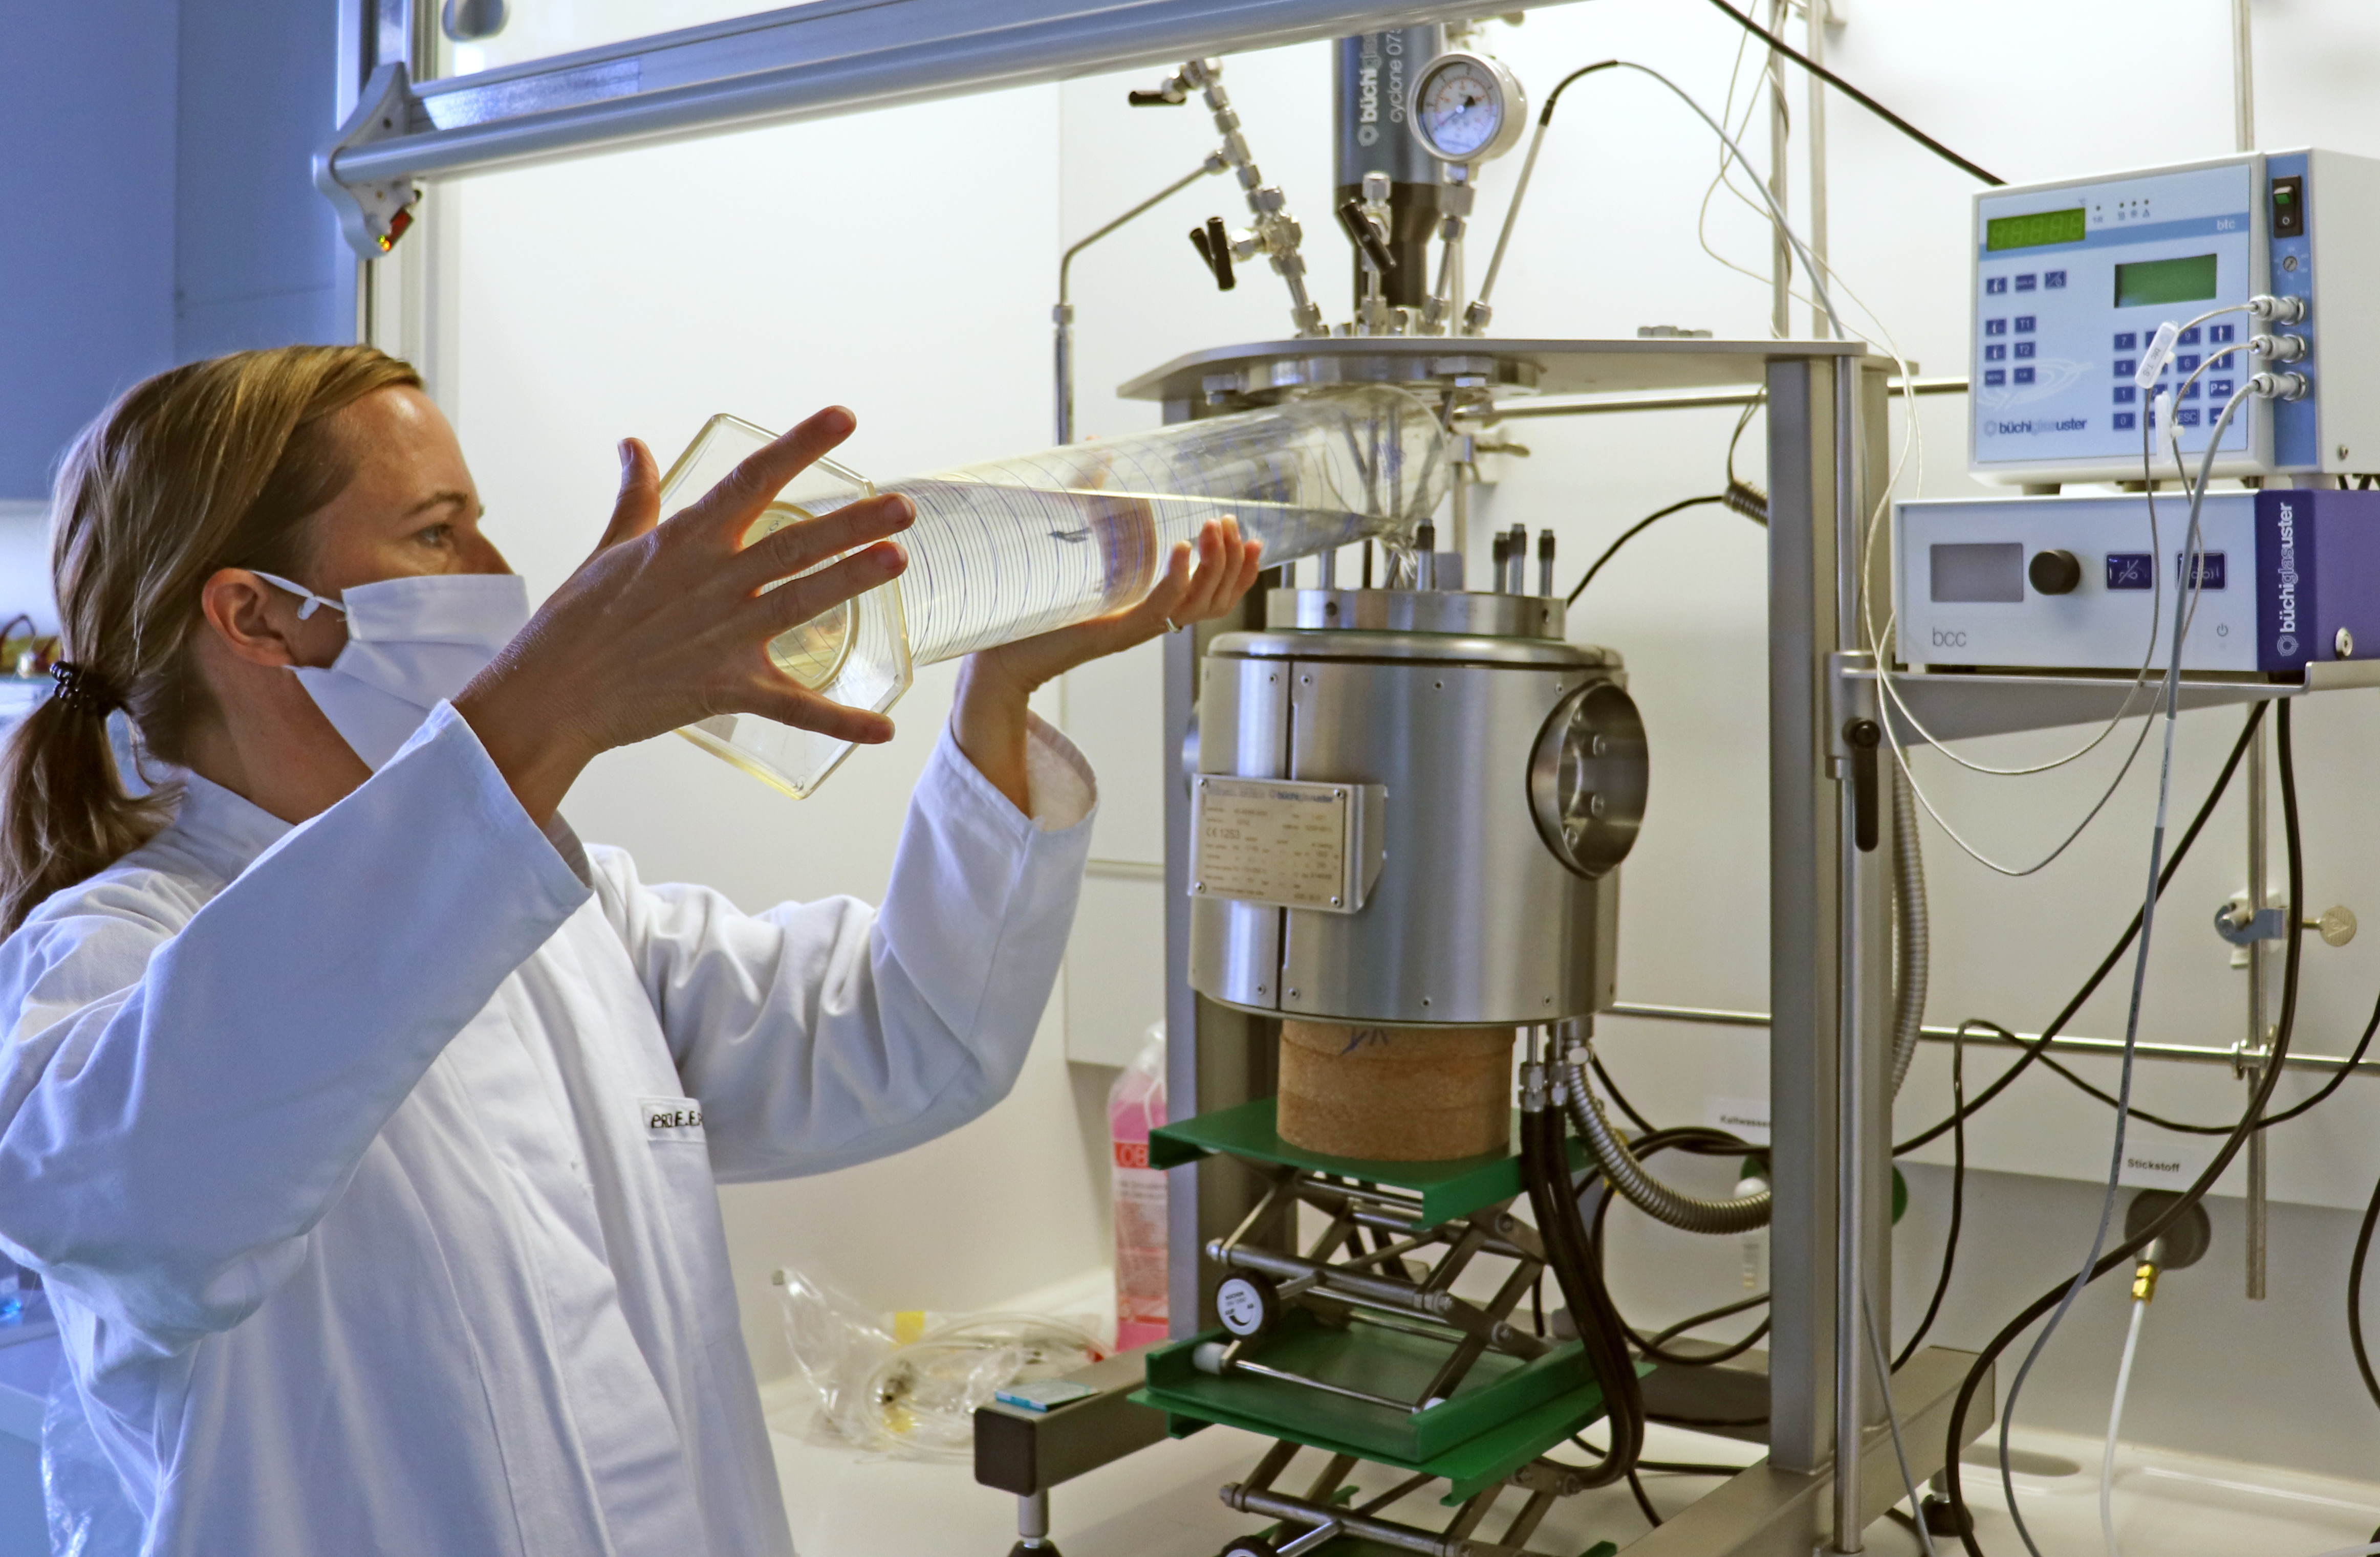 Zu sehen ist eine Frau in einem weißen Laborkittel vor einer Apparatur aus Edelstahl. Die Frau füllt aus einem großen Messzylinder eine klare Flüssigkeit in den Edelstahlbehälter der Apparatur.